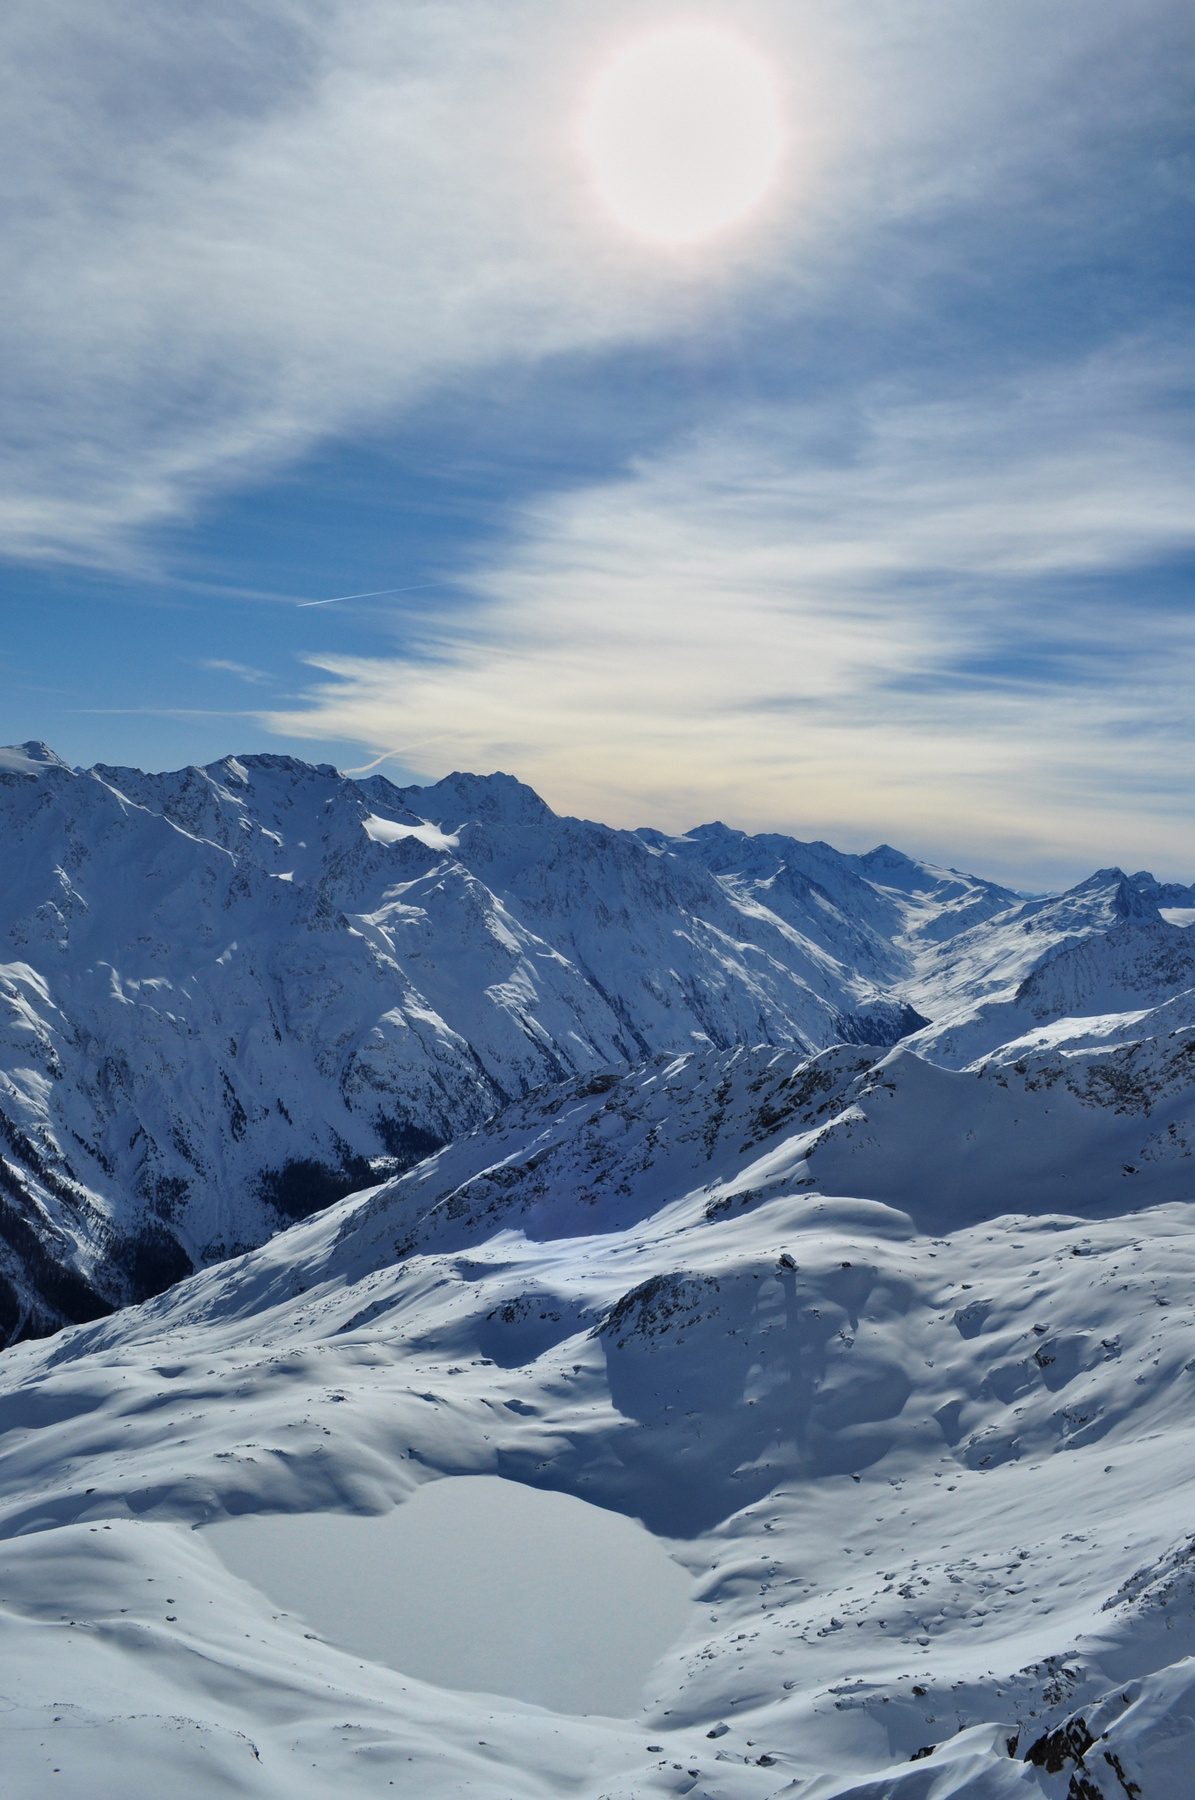 "... Я сердце оставил в синих горах..." Тироль Австрия Gaislachkogl Alps Austria